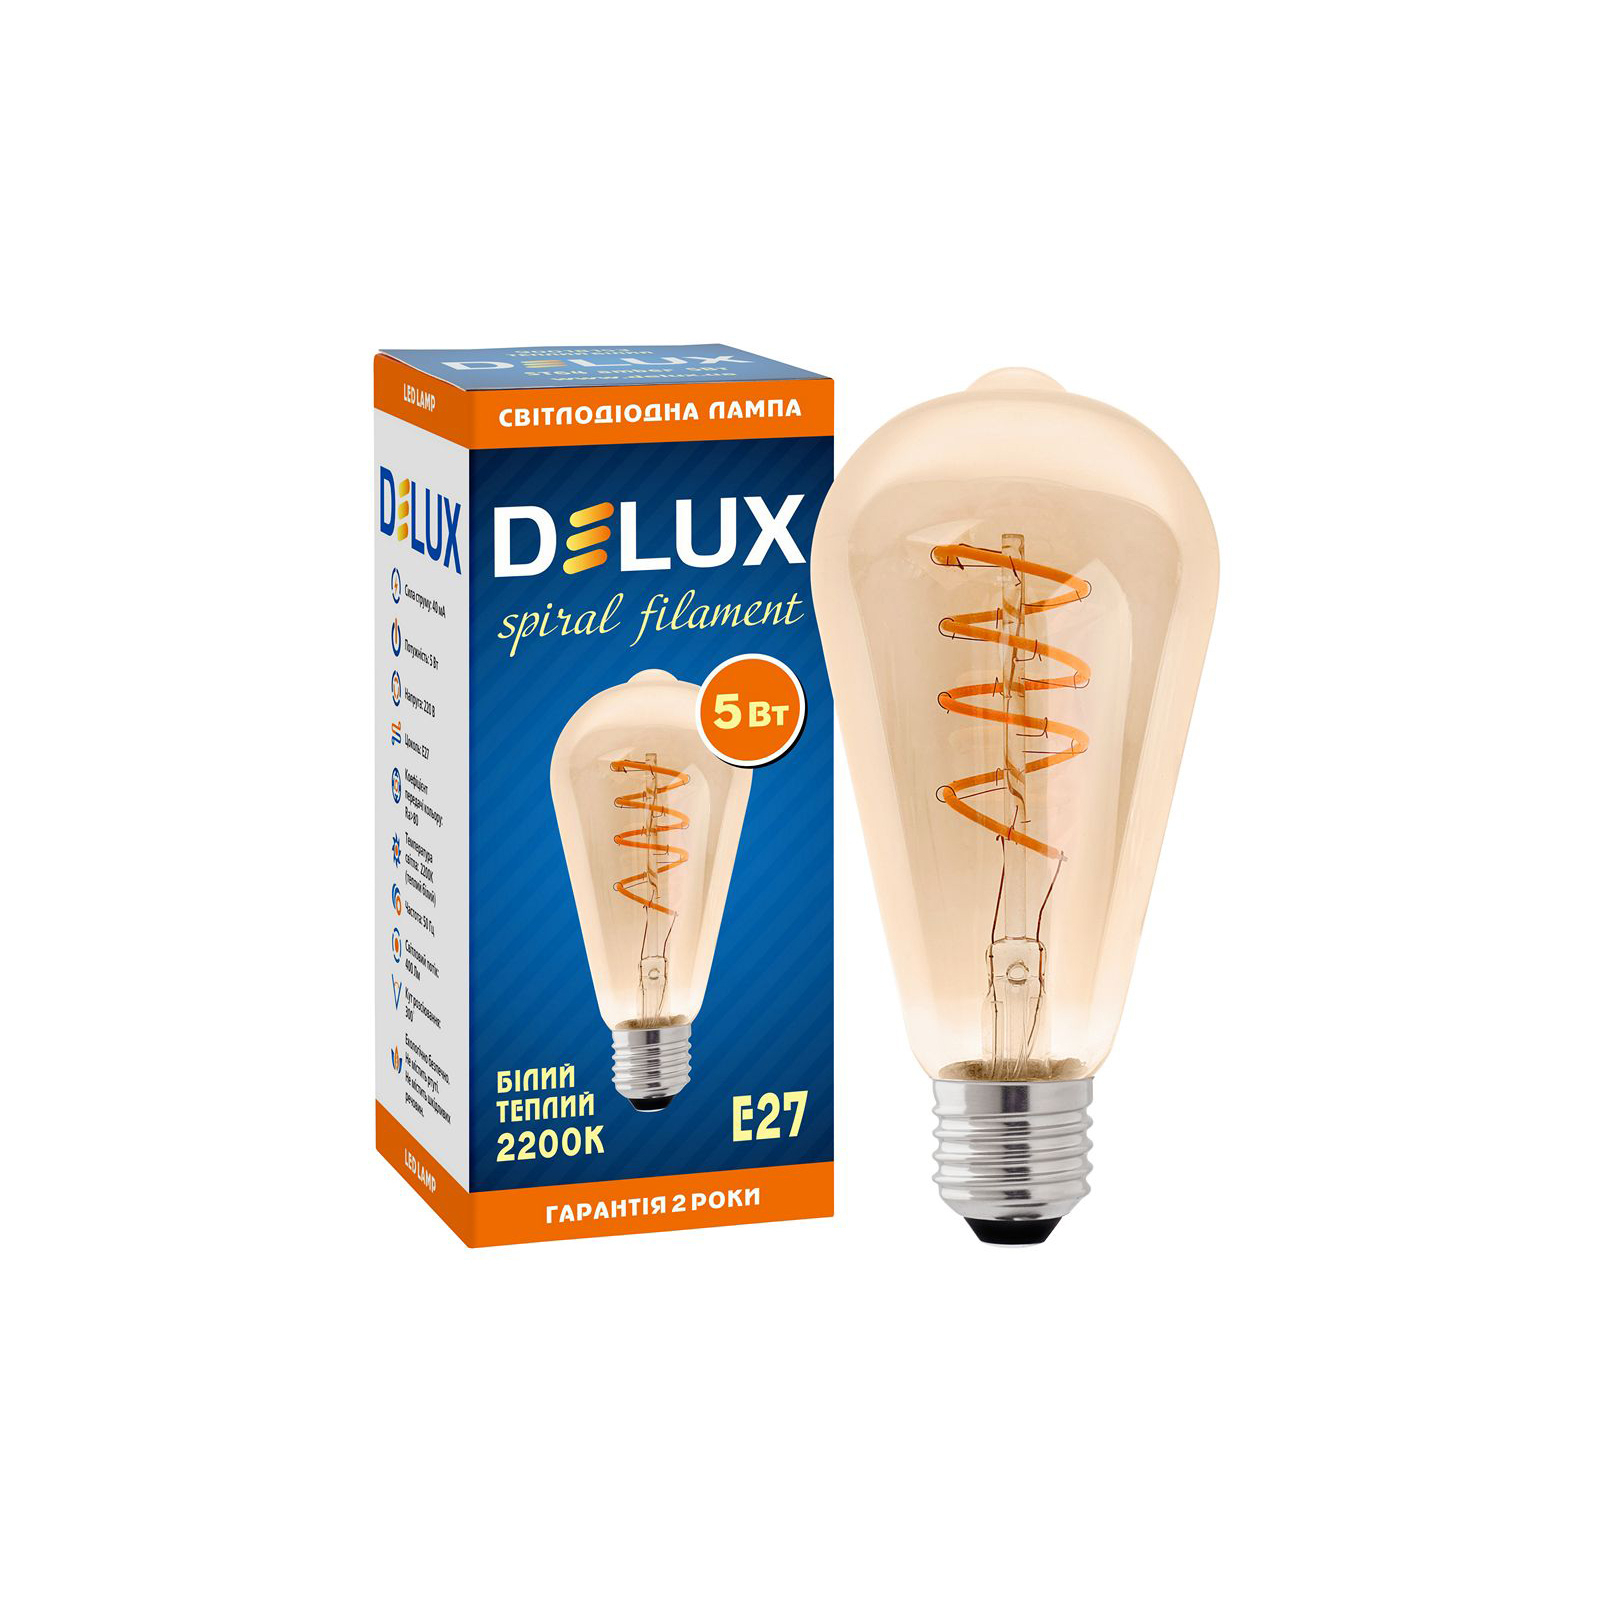 Лампочка Delux ST64 5Вт E27 2200К amber spiral_filament (90018153) изображение 2